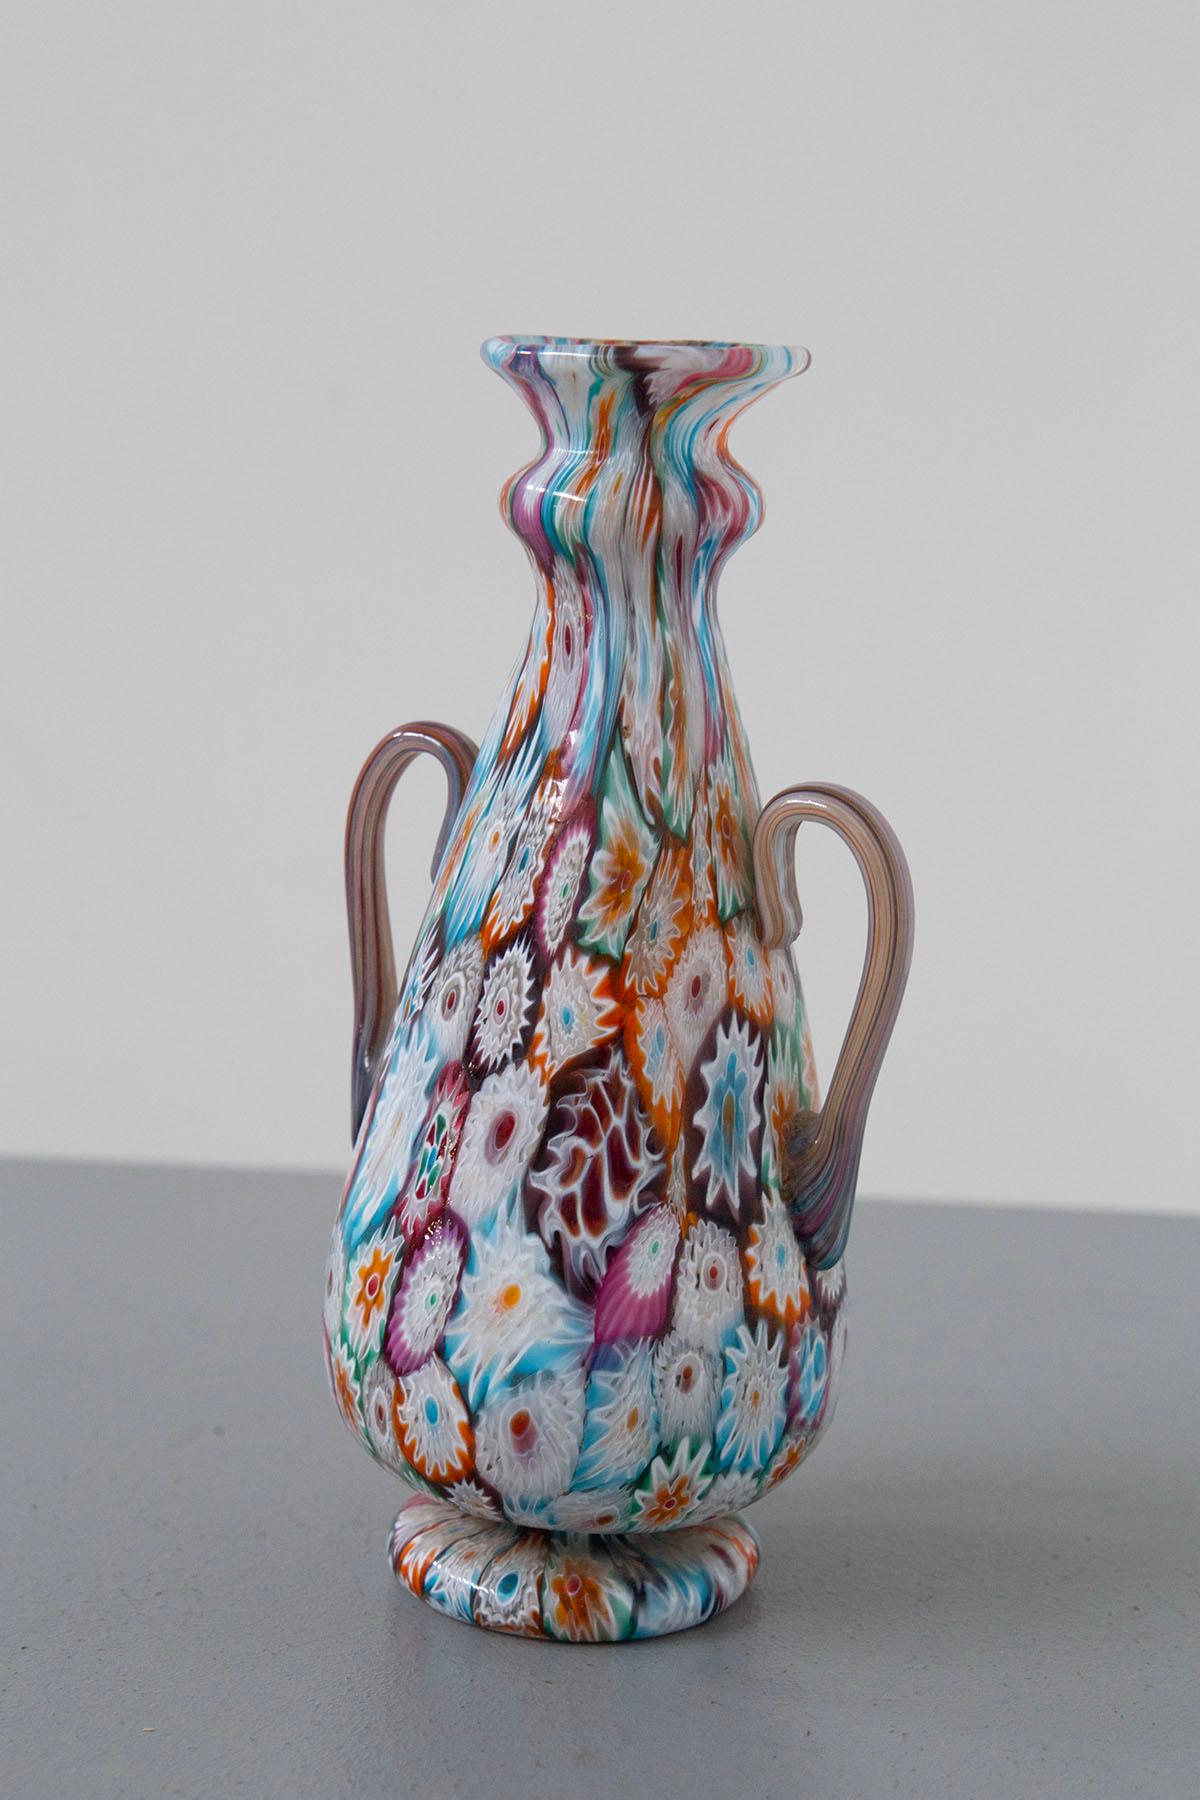 Erleben Sie die exquisite Grandeur einer dekorativen Vase, ein wahres Meisterwerk, geboren aus der künstlerischen Glasbläsertradition Muranos. Diese prächtige Kreation ist mit einem handgefertigten Mosaik aus tausend Blumen, den so genannten